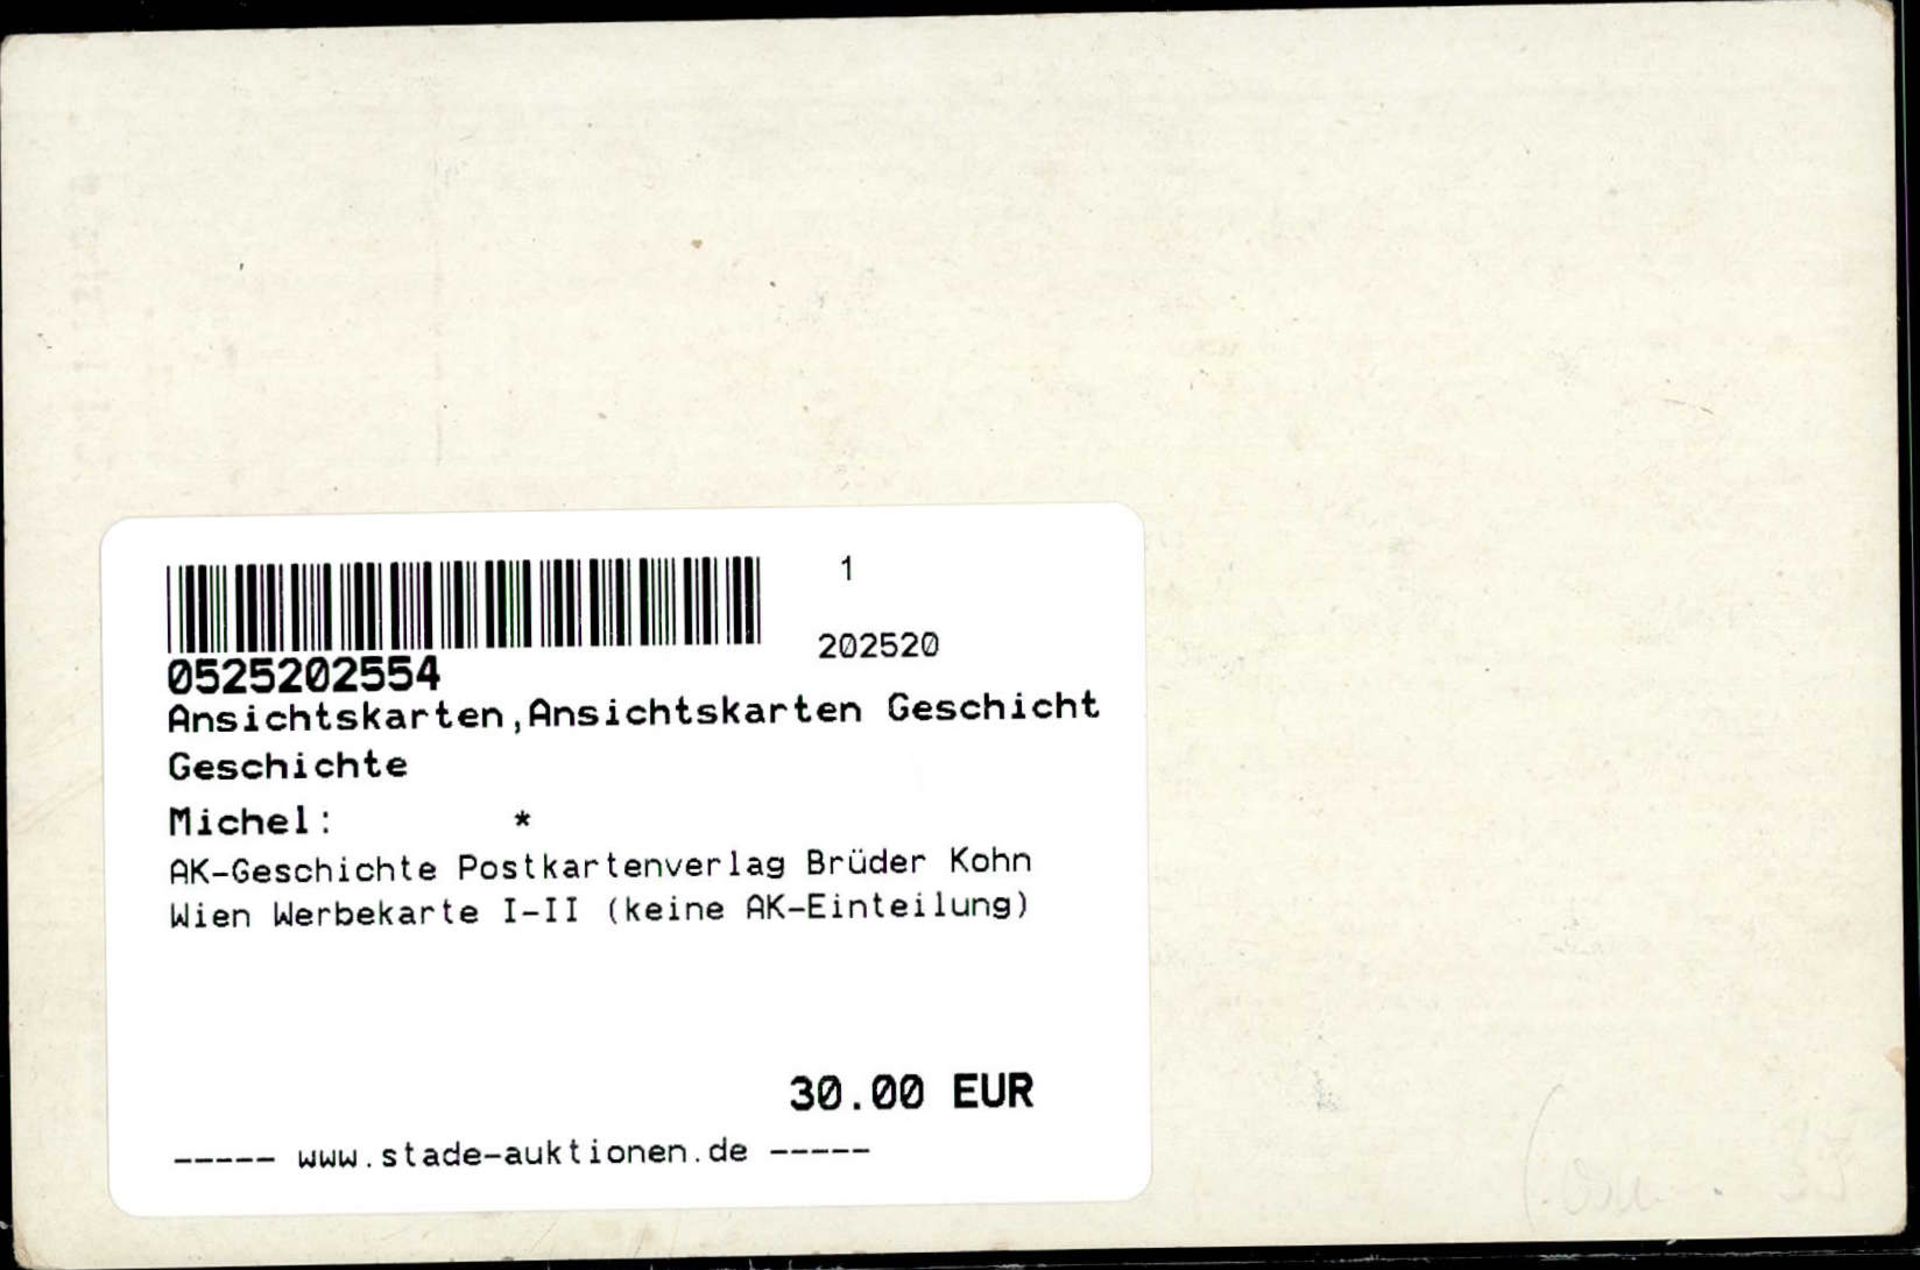 AK-Geschichte Postkartenverlag Brüder Kohn Wien Werbekarte I-II (keine AK-Einteilung) - Bild 2 aus 2